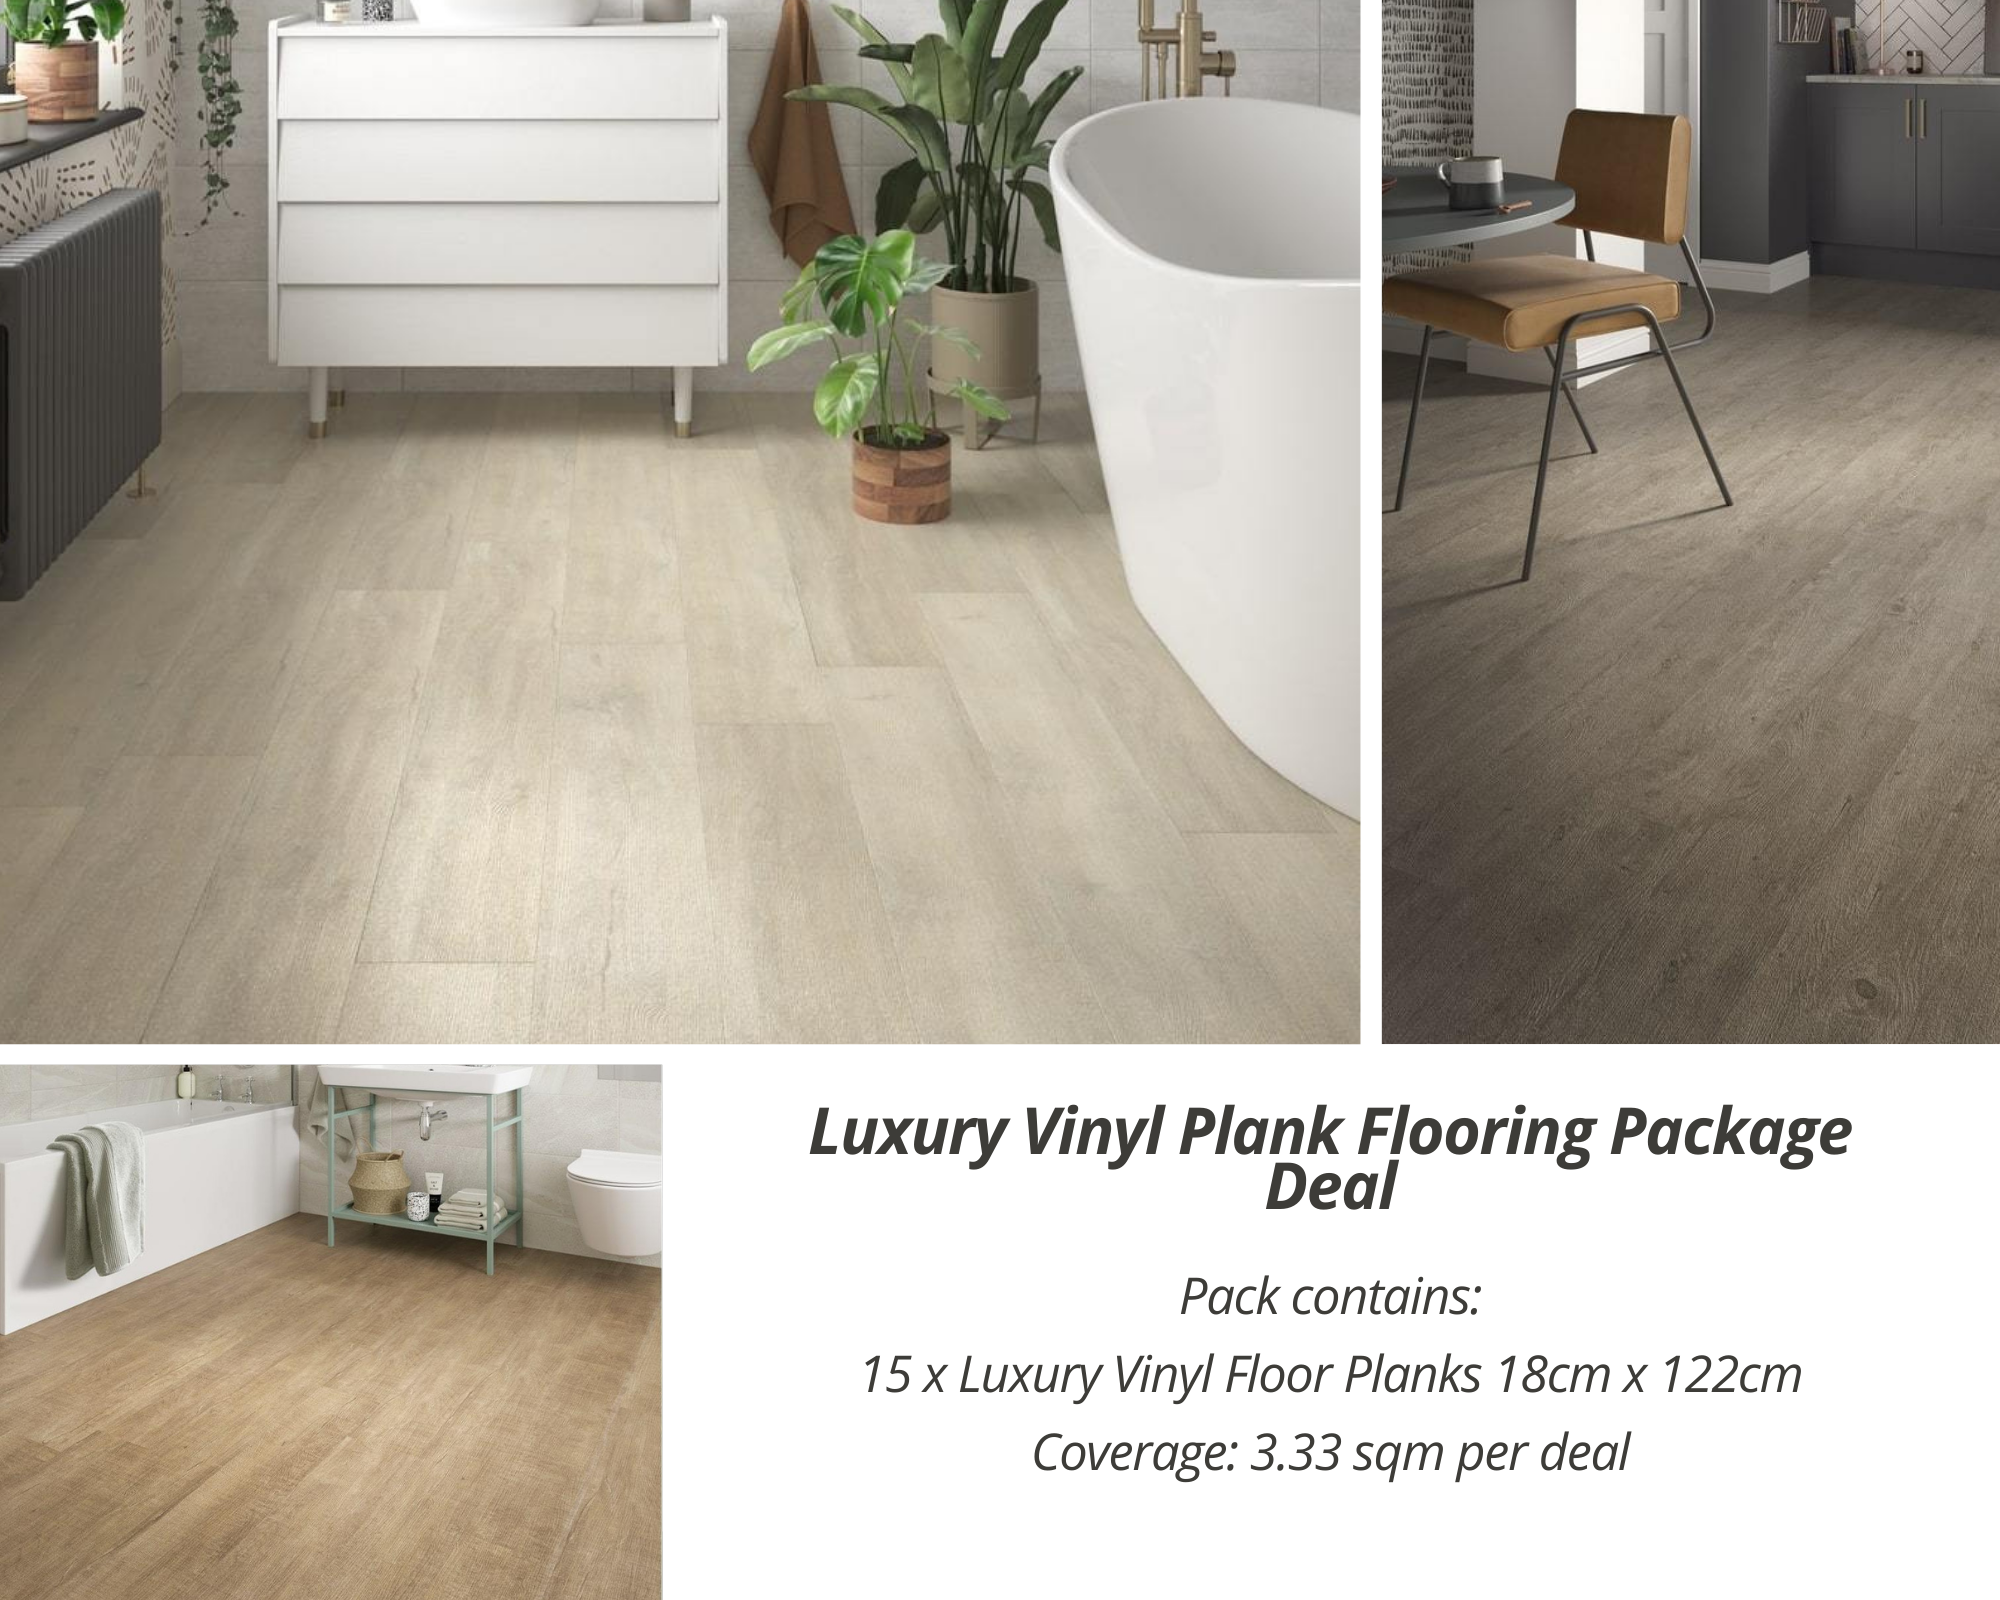 Luxury Vinyl Plank Flooring Package Deal